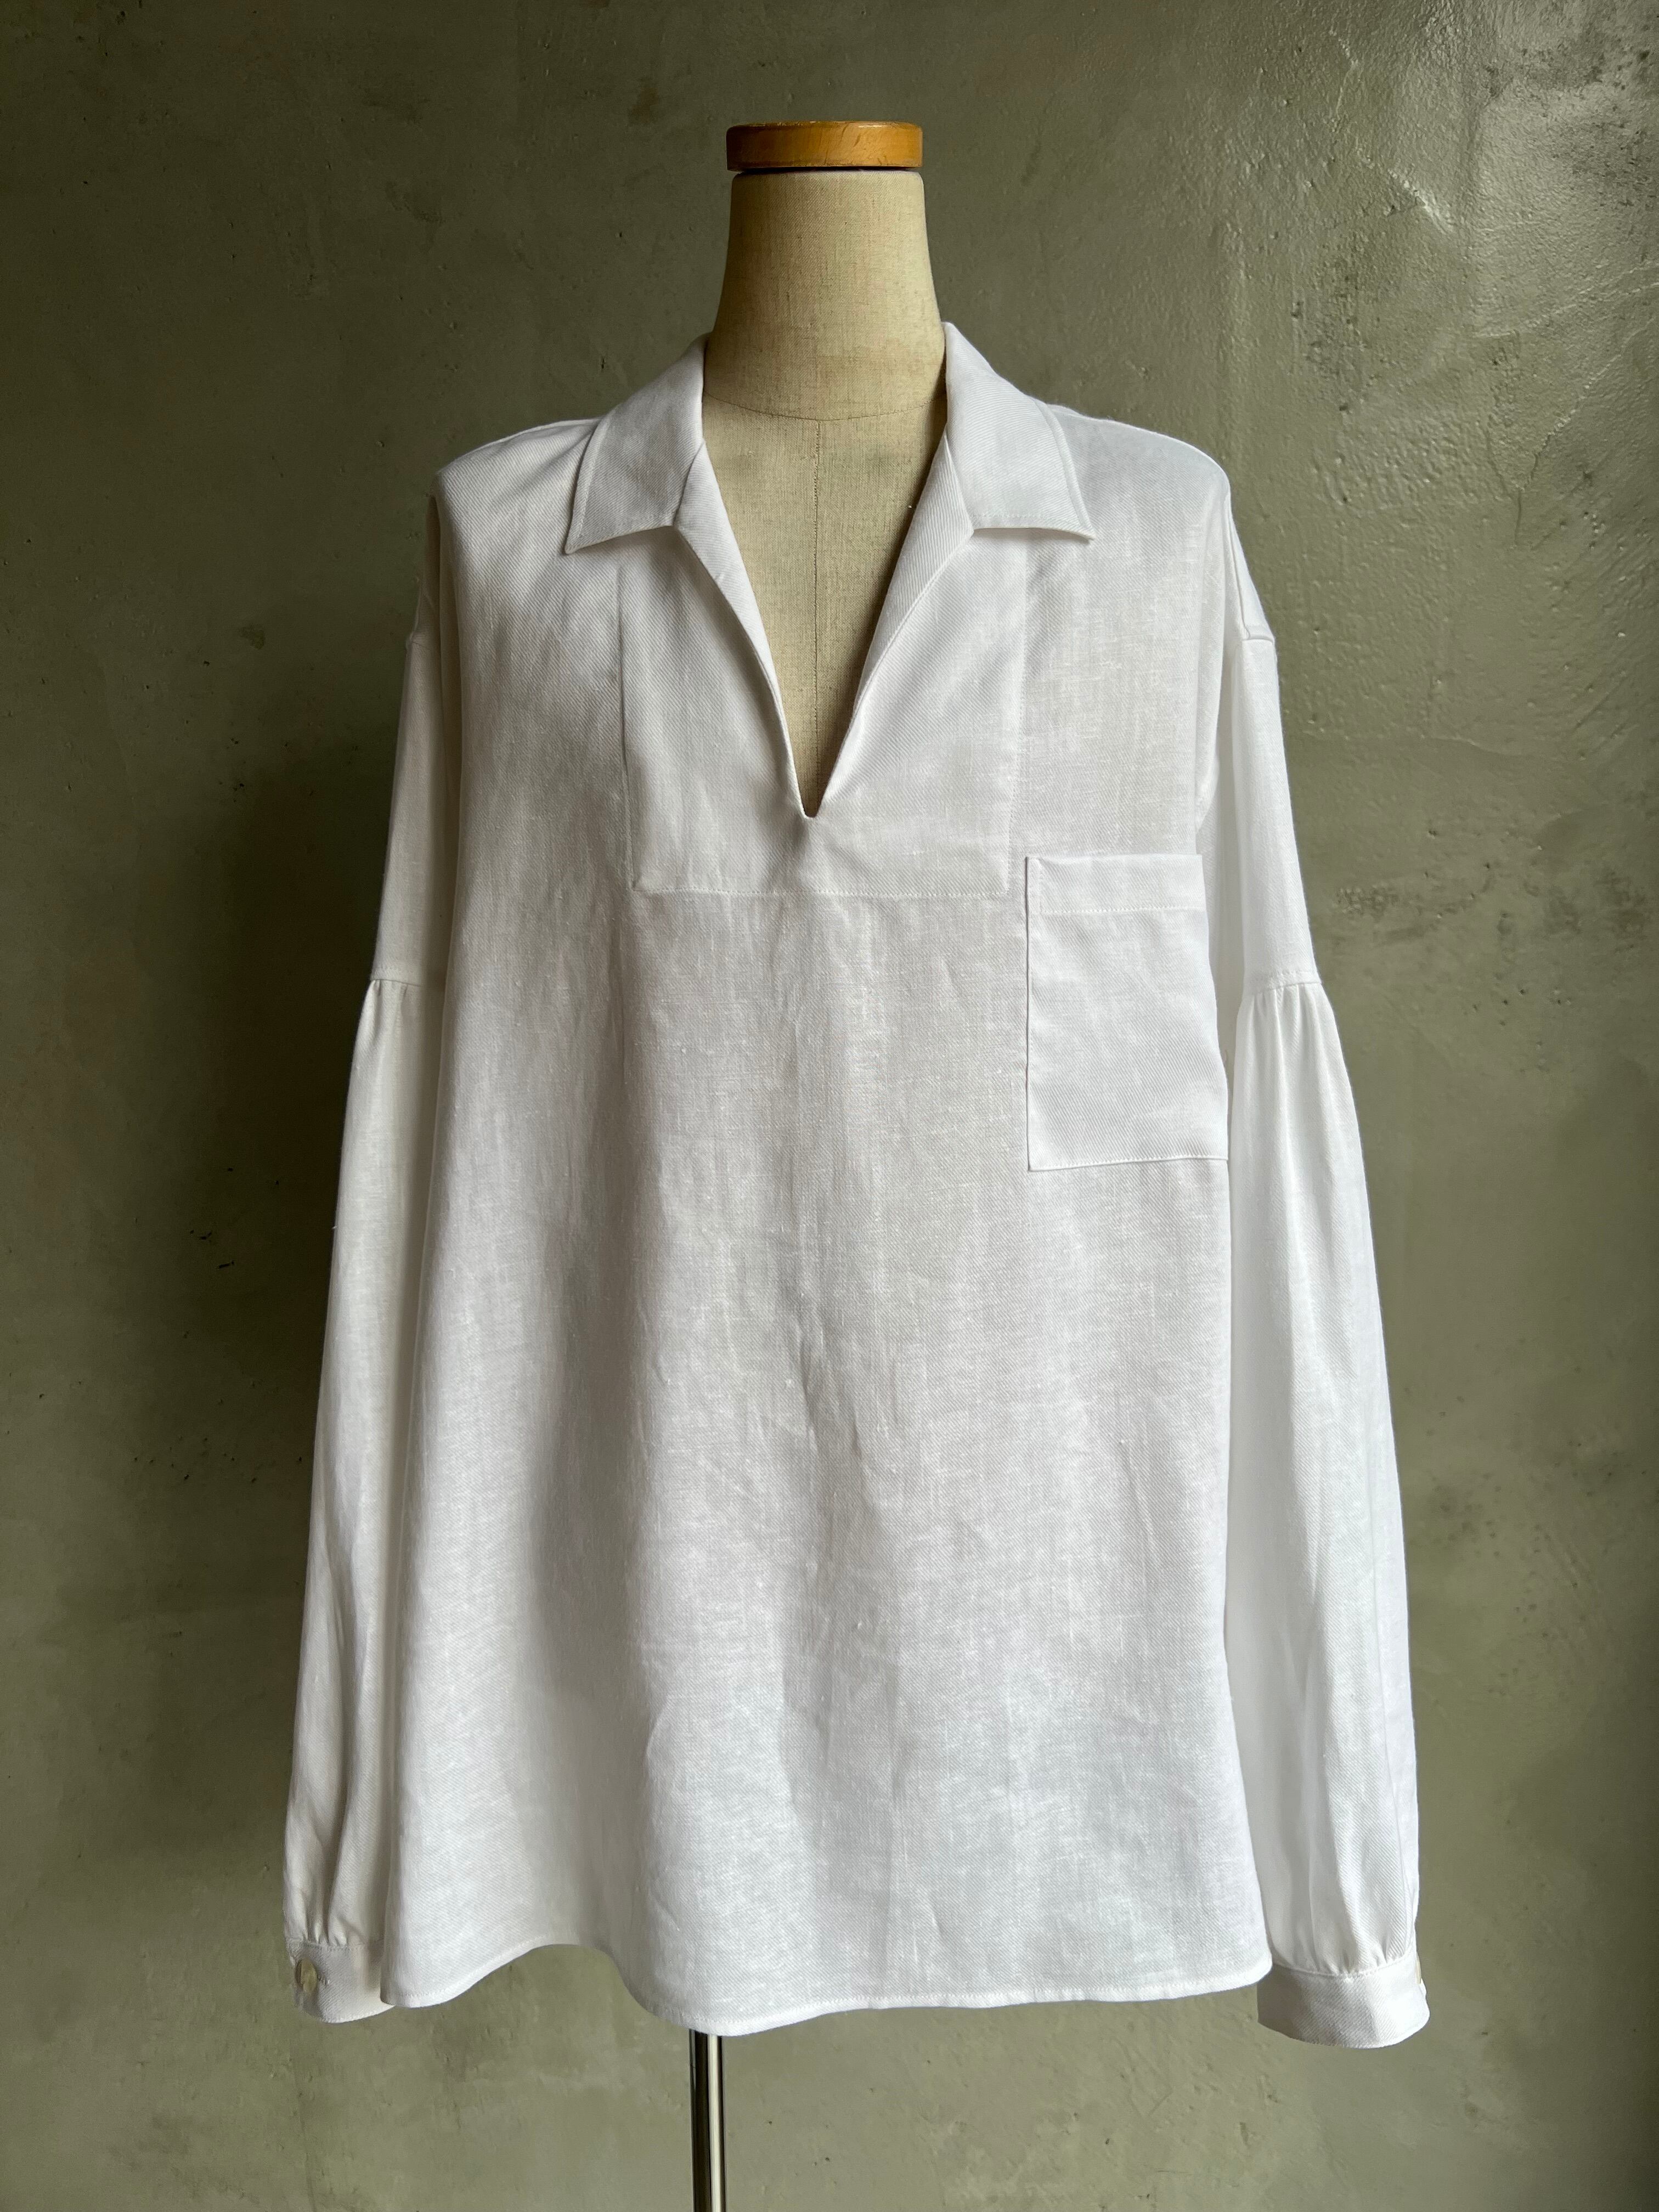 GEN IZAWA / Linen skipper shirt (white)